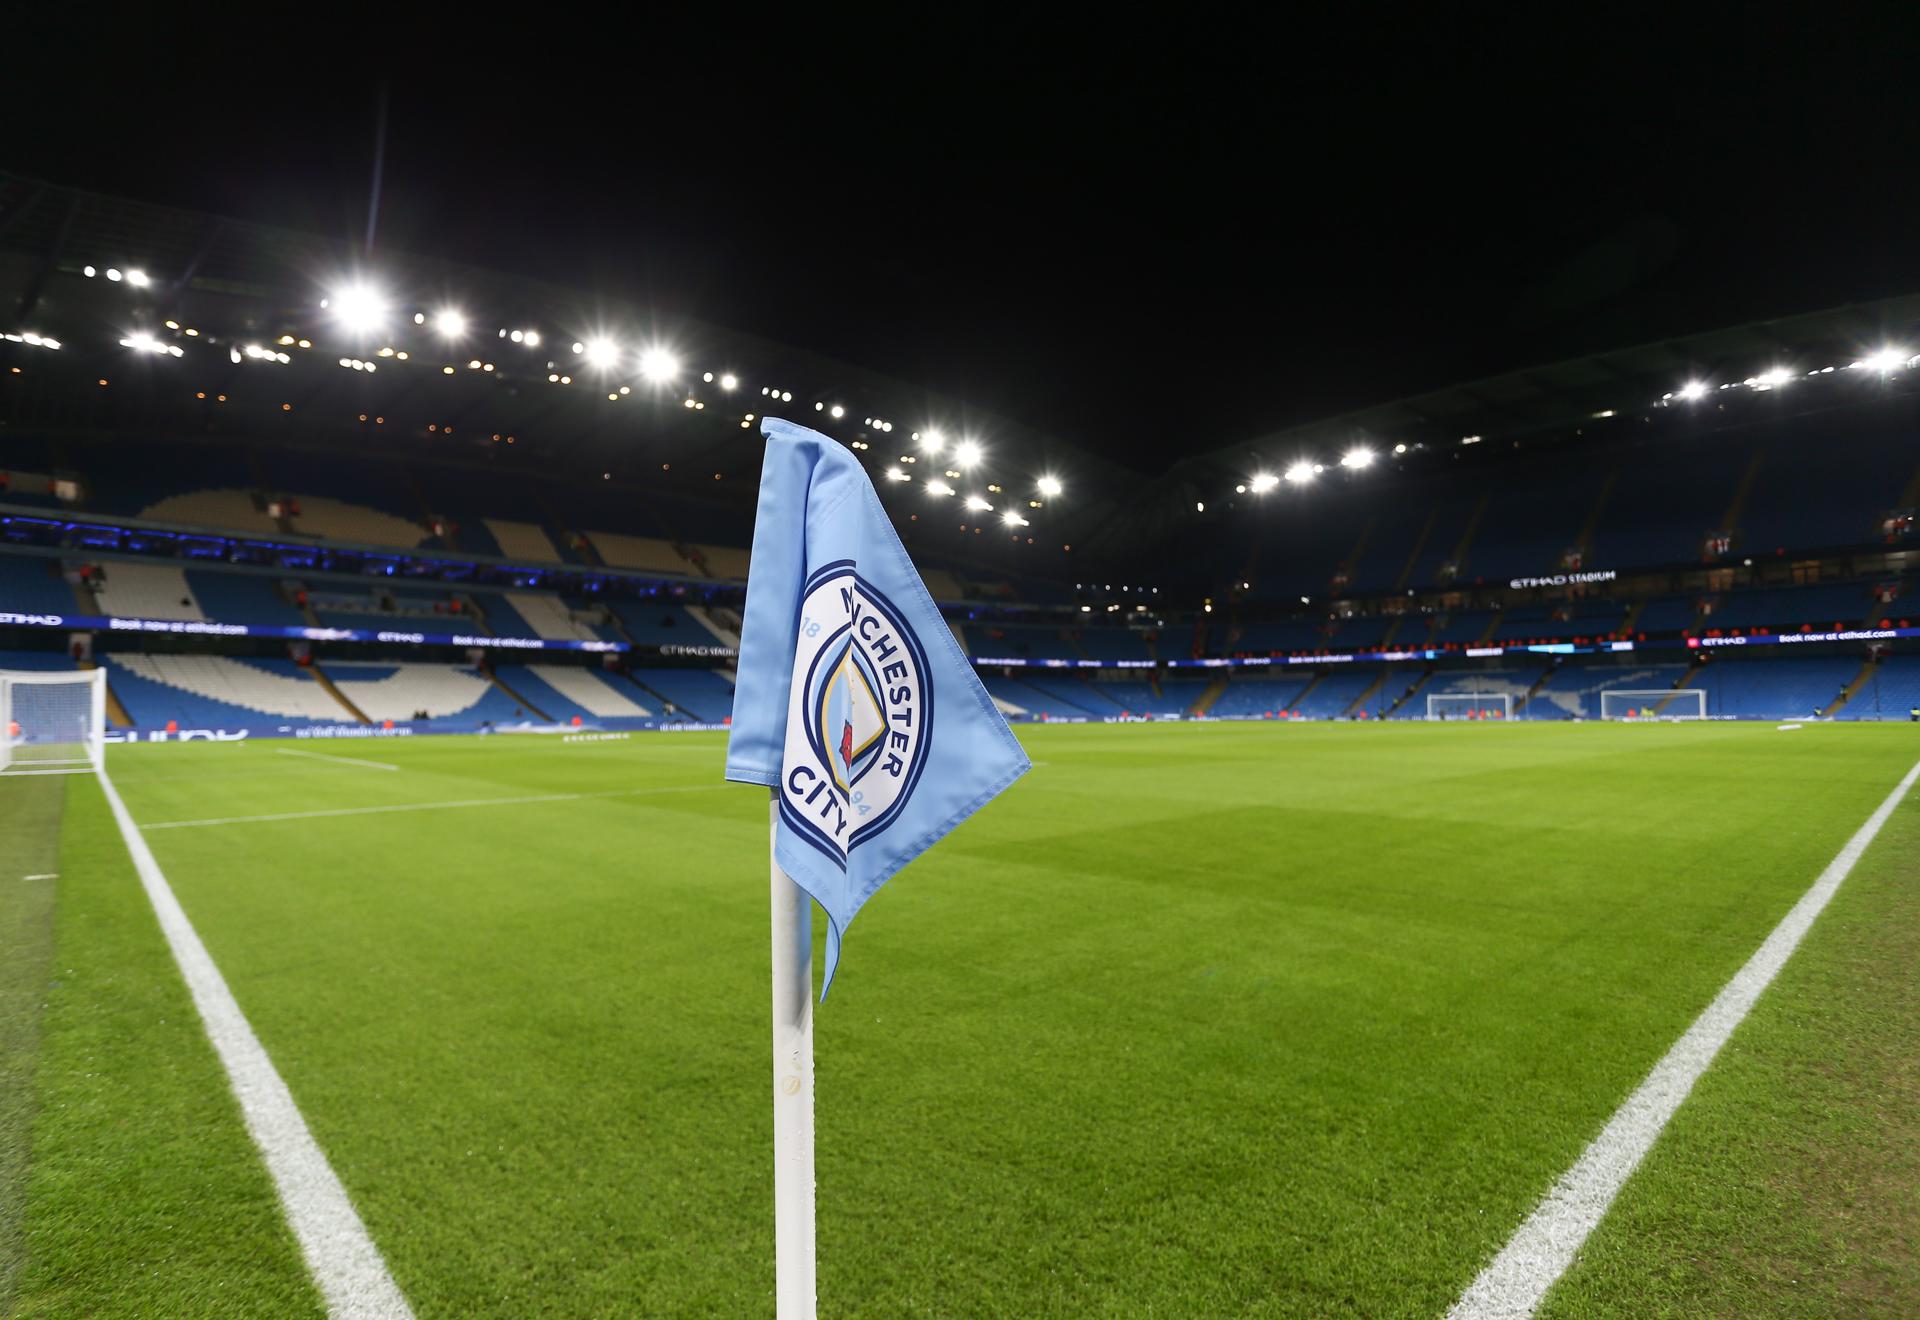 El Manchester City, sota sospita: la Premier League investiga greus irregularitats financeres